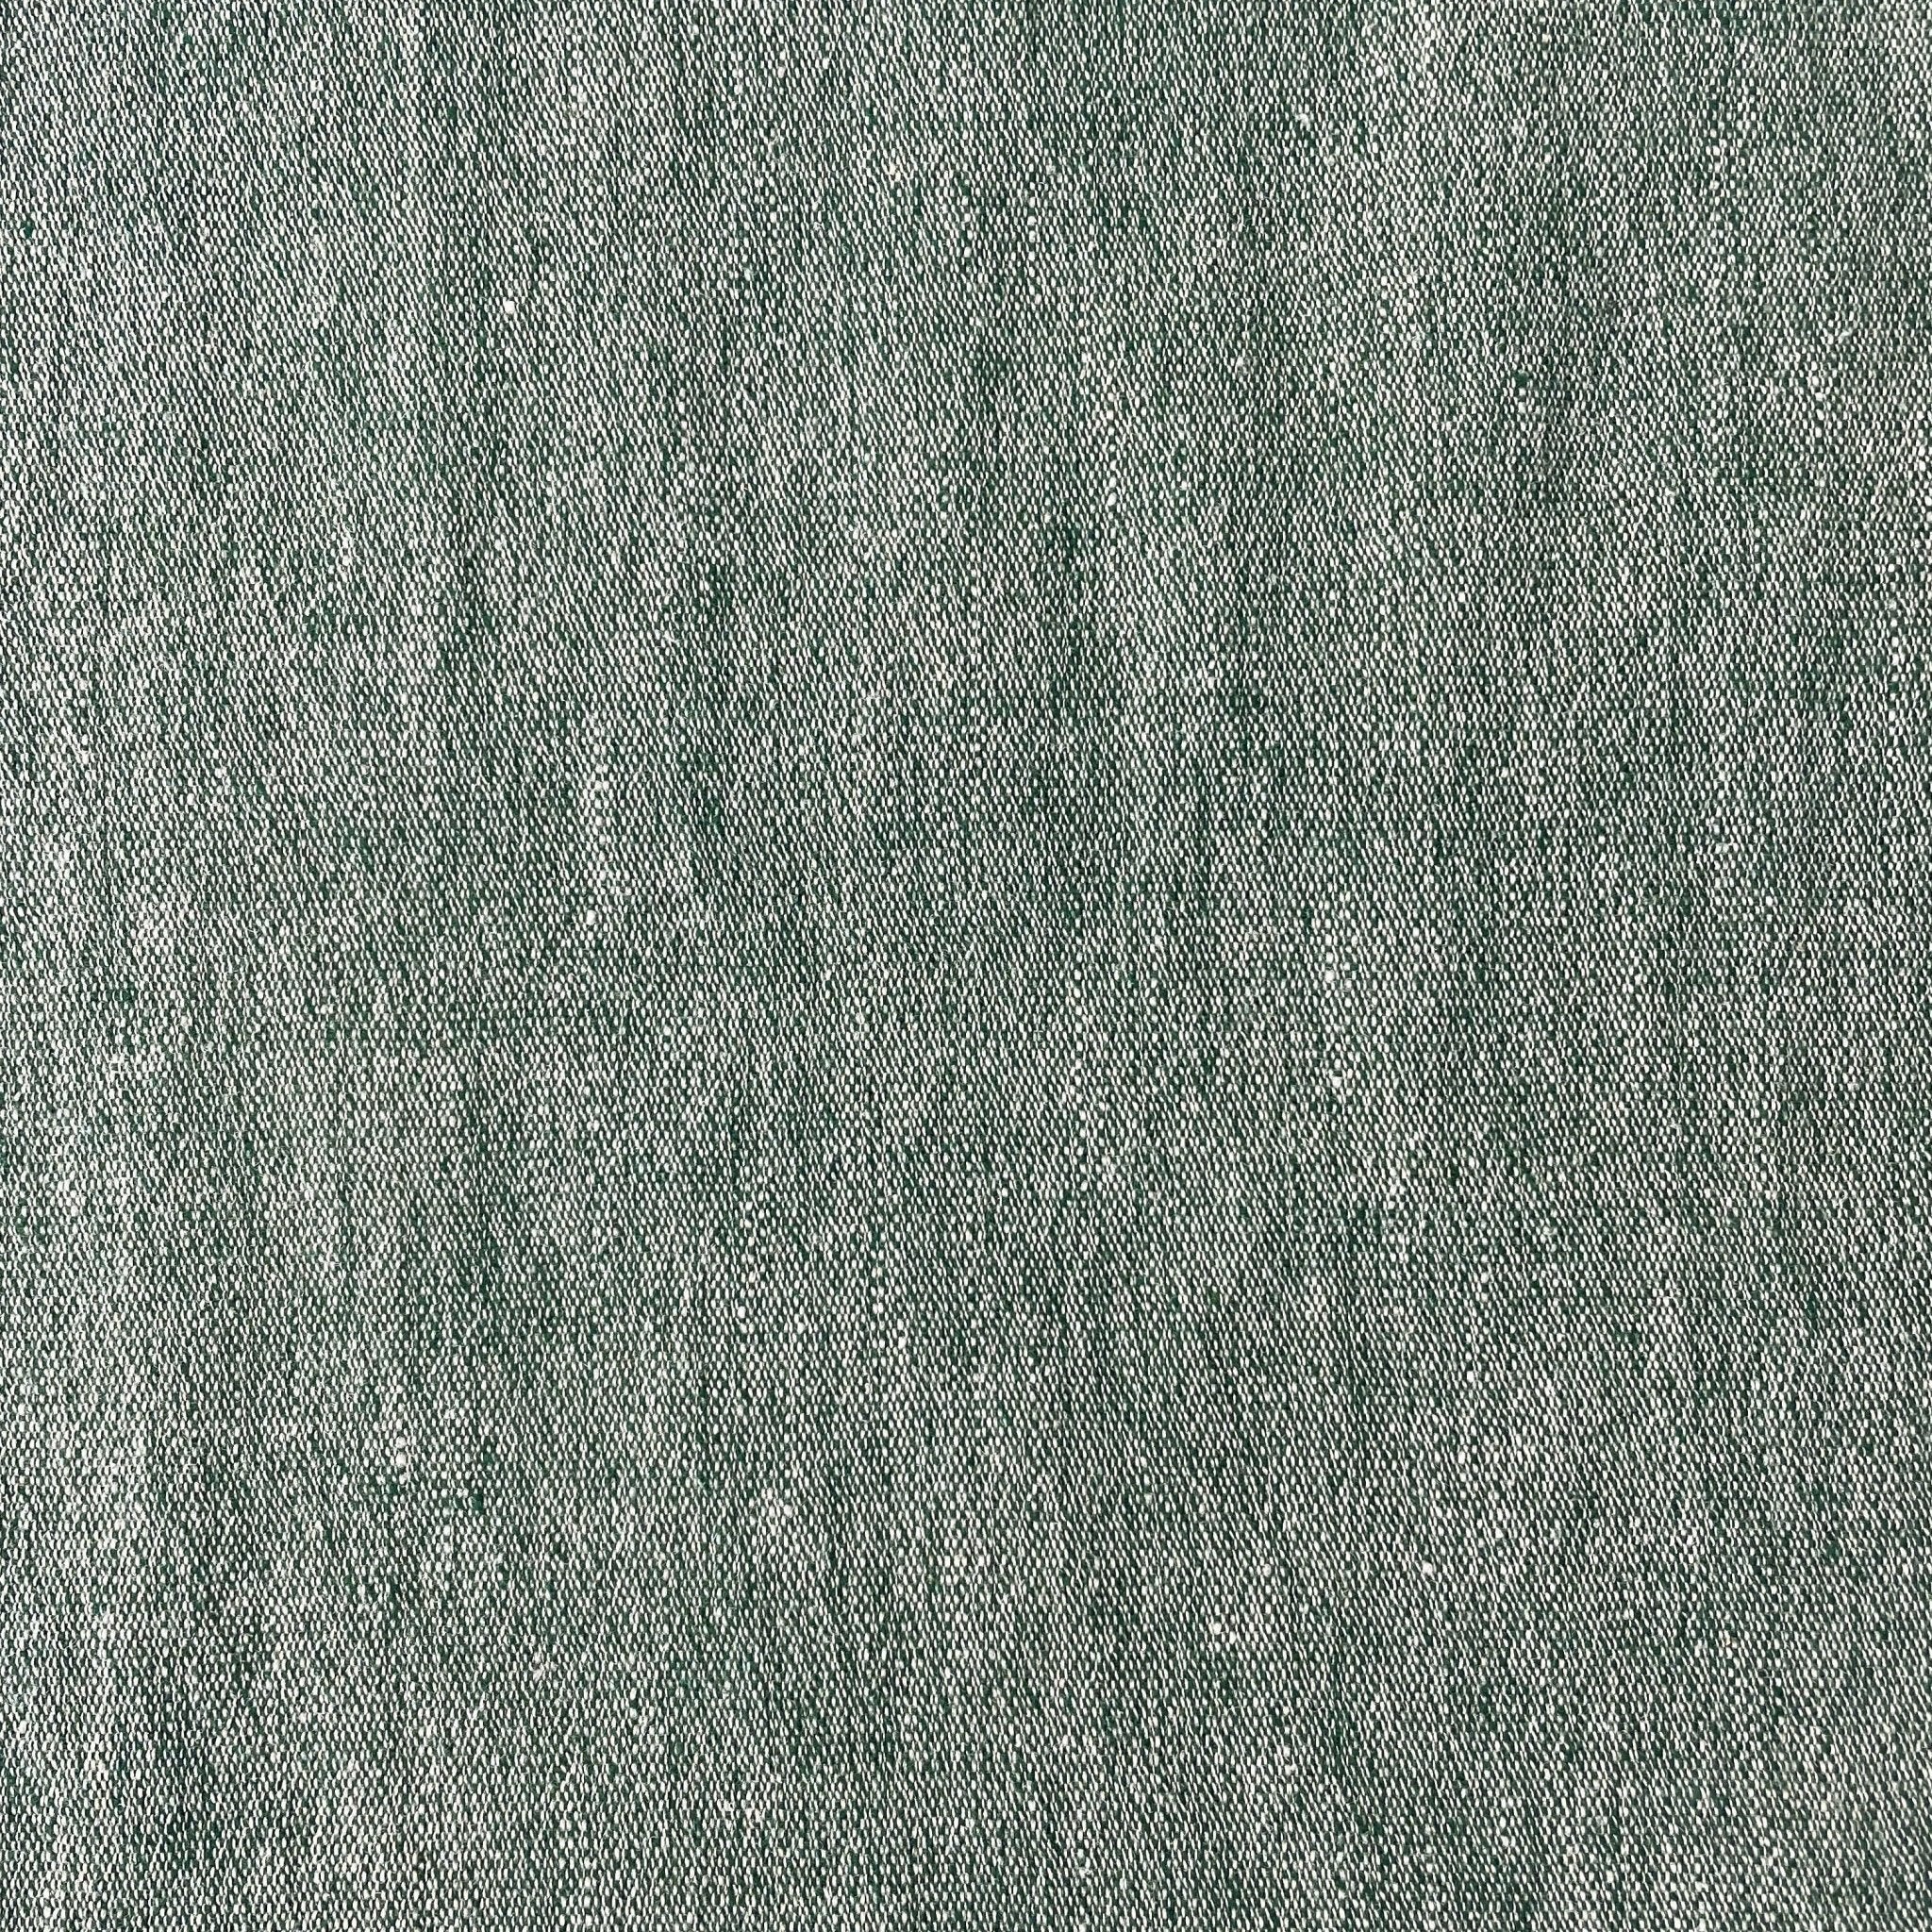 Linen Wool Fabric 6105 6106 6107 - The Linen Lab - Green